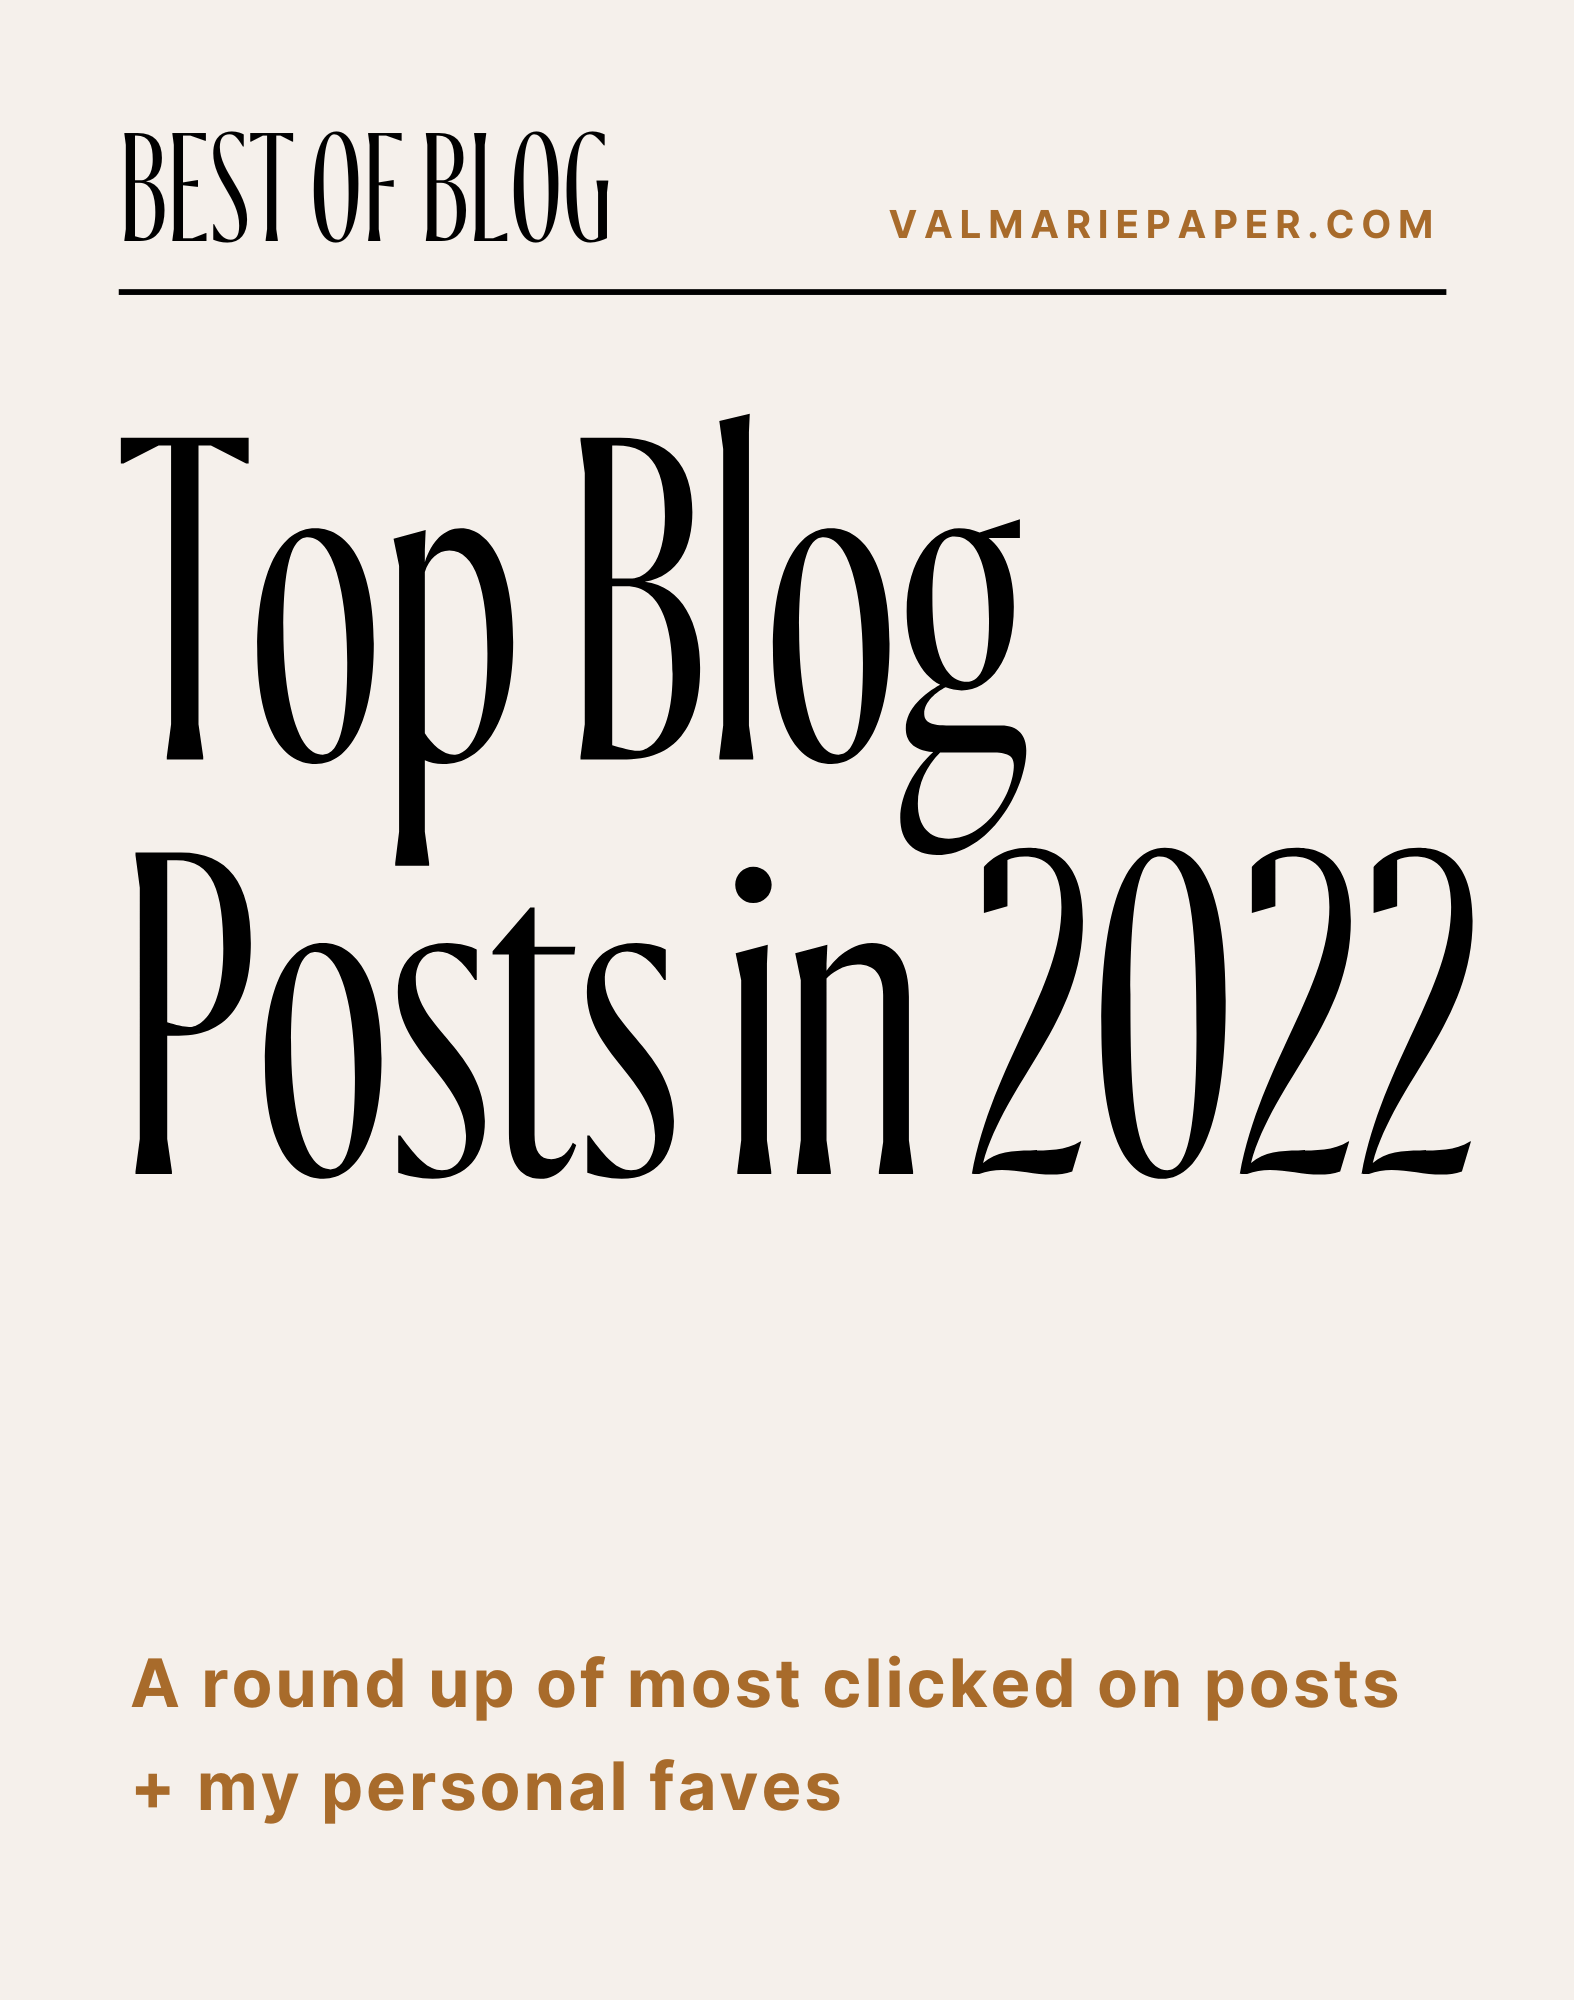 Top blog posts in 2022 by Valerie Woerner